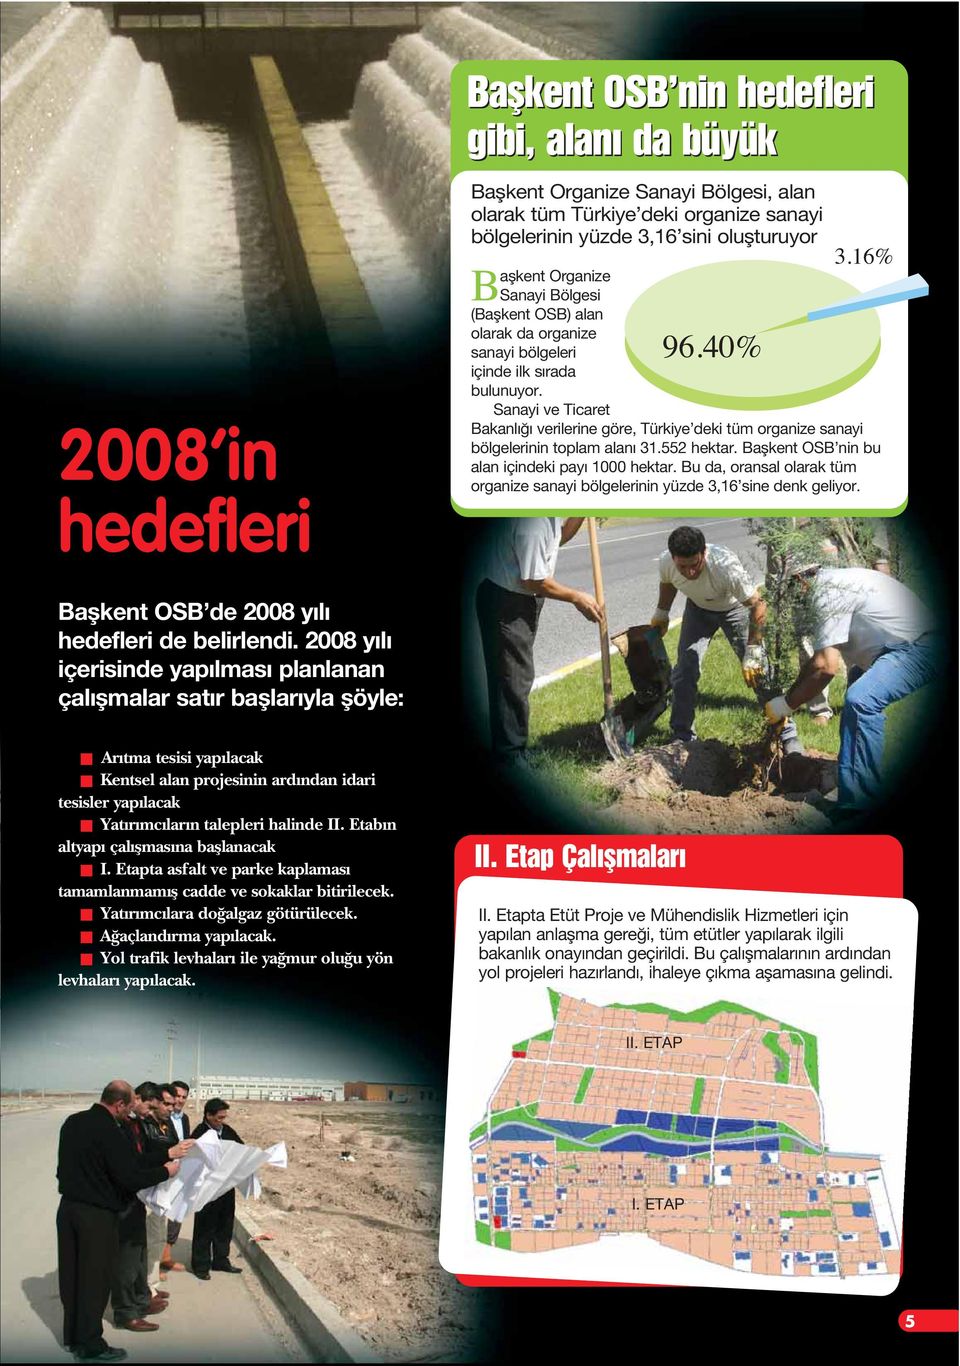 Sanayi ve Ticaret Bakanl verilerine göre, Türkiye deki tüm organize sanayi bölgelerinin toplam alan 31.552 hektar. Baflkent OSB nin bu alan içindeki pay 1000 hektar.